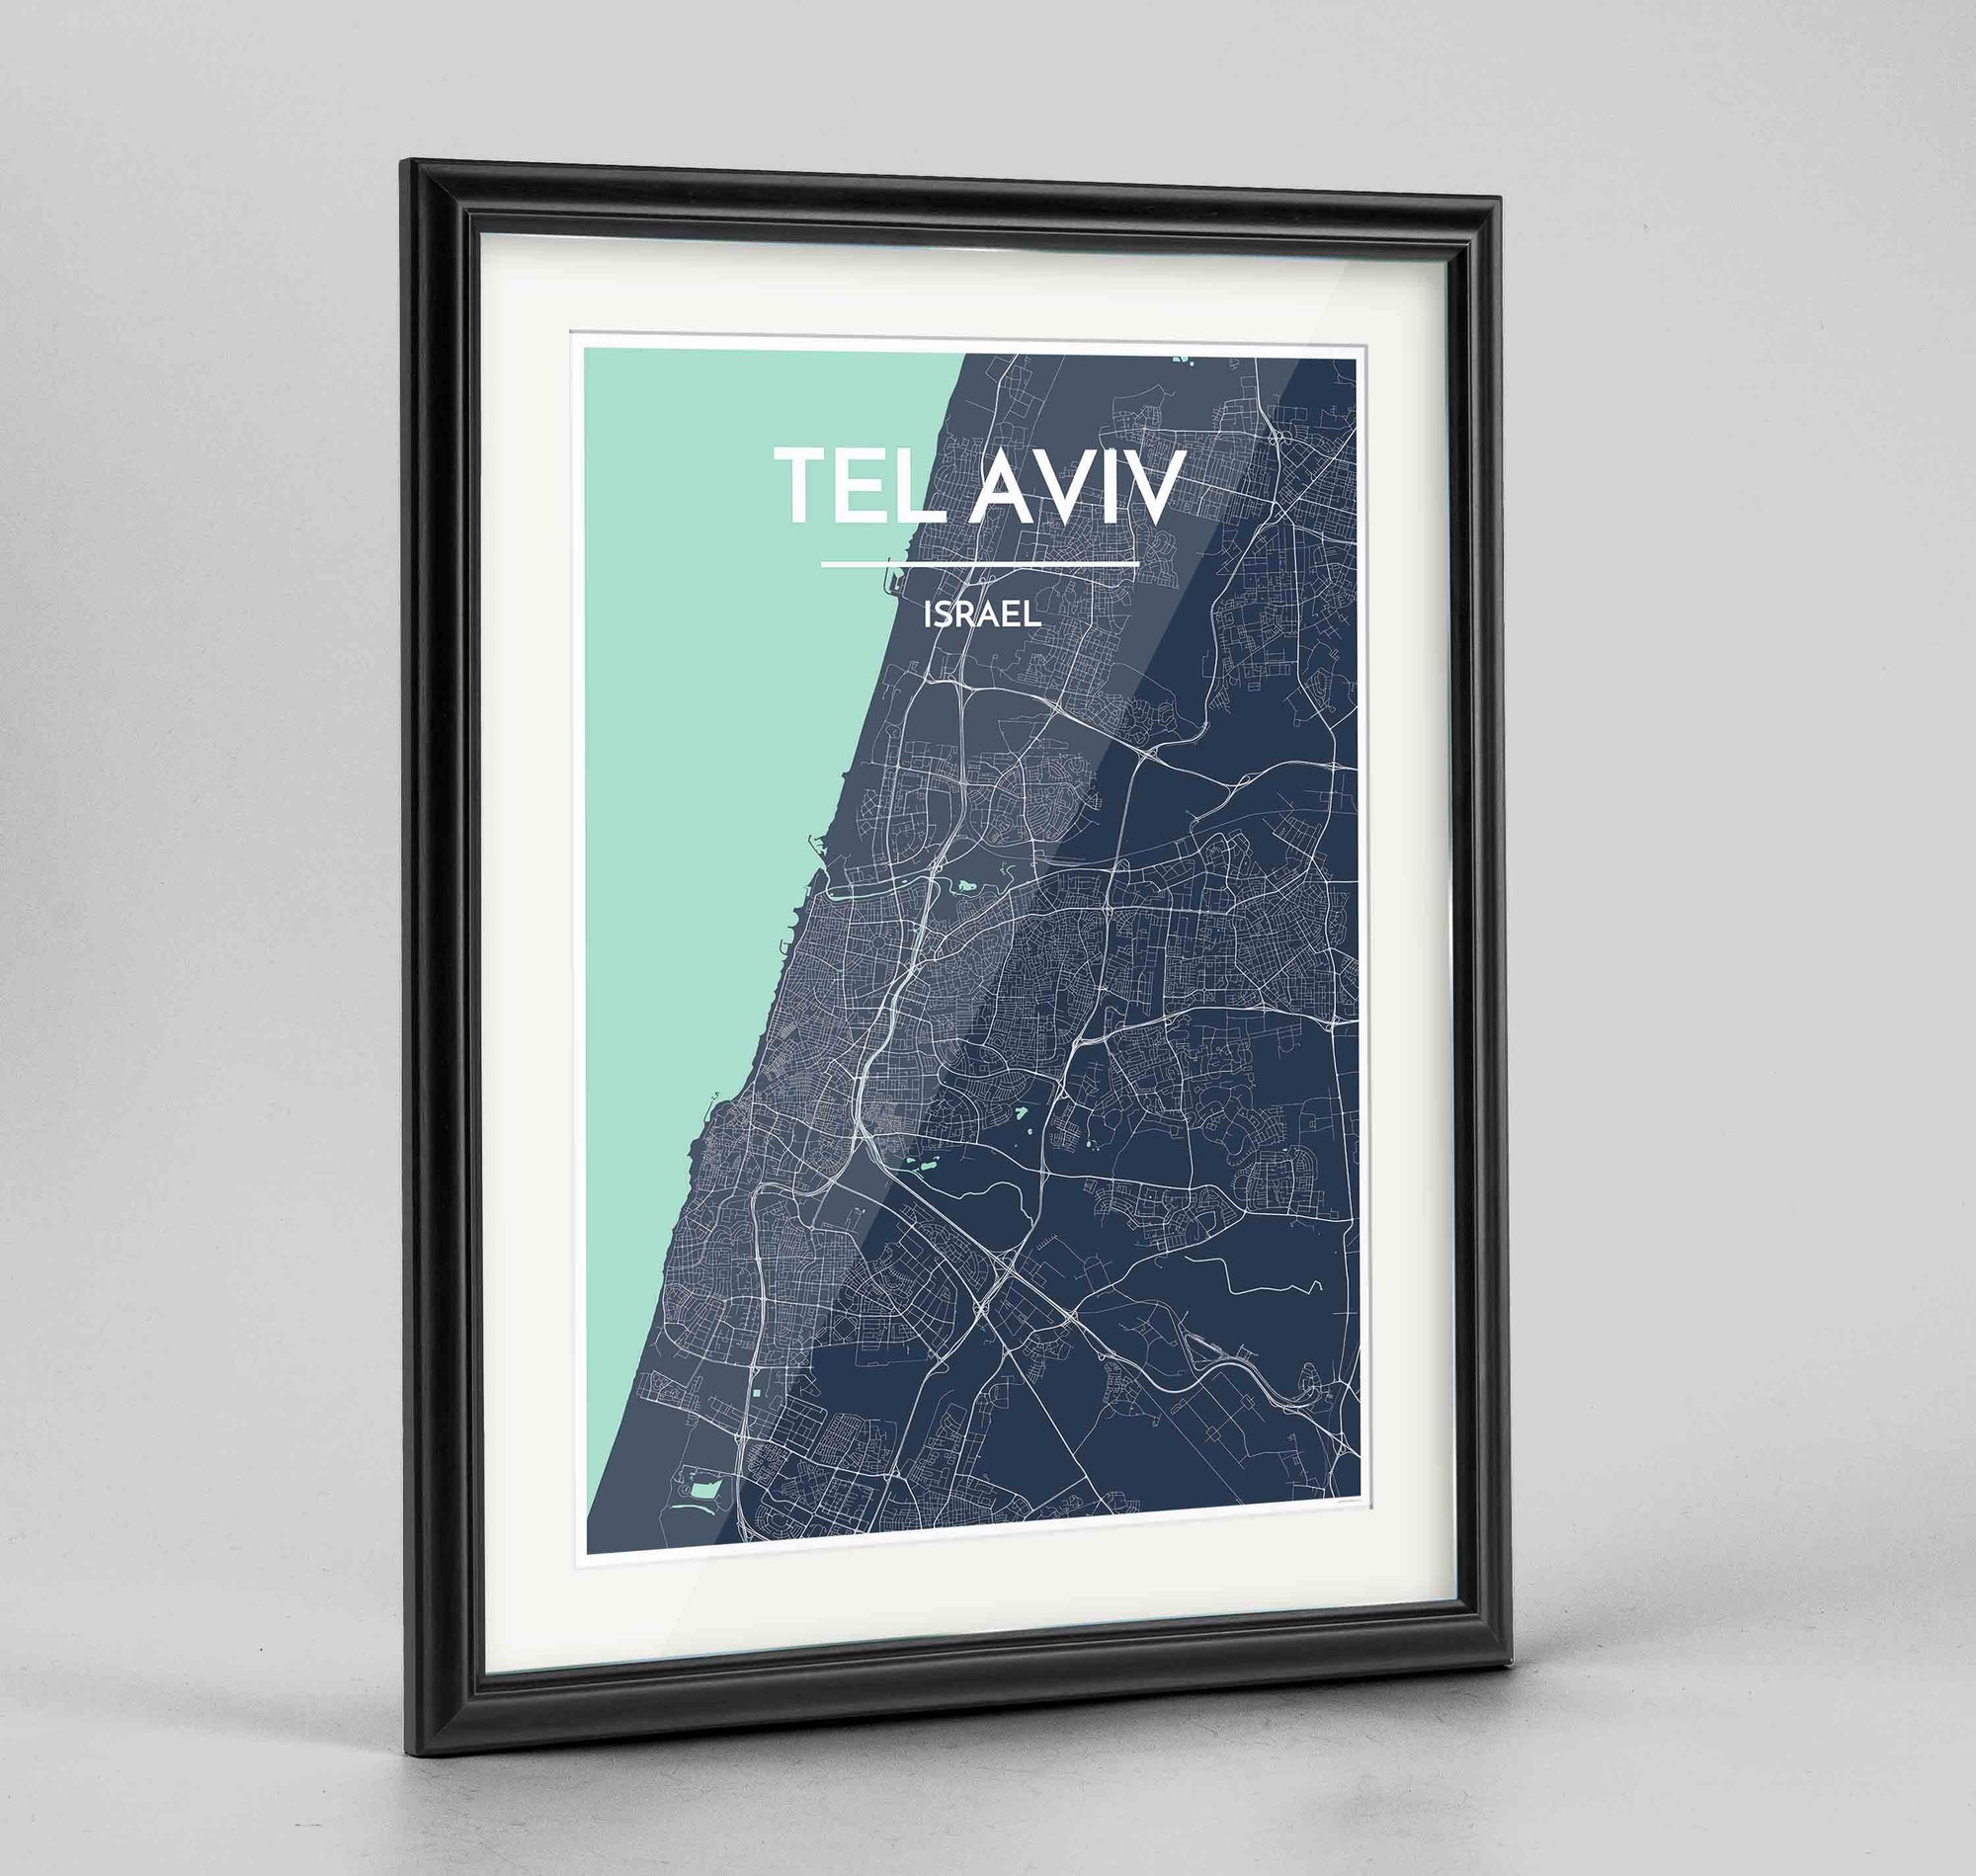 Framed Tel Aviv Map Art Print 24x36" Traditional Black frame Point Two Design Group